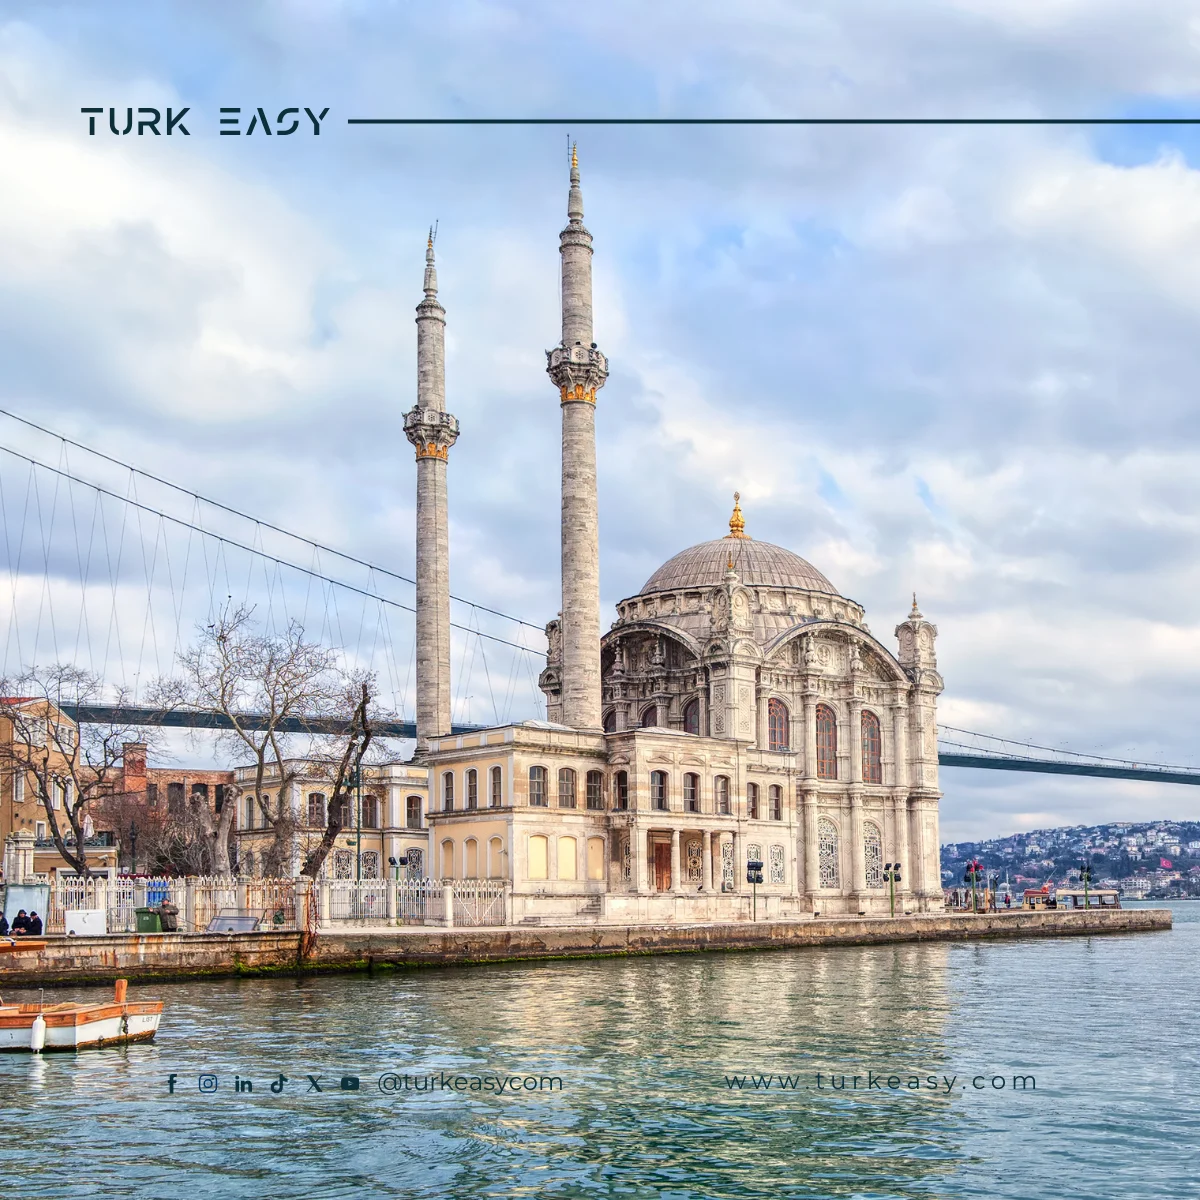 Tourism in Turkey: Advantages and Top Tours - Bridges of Turkey